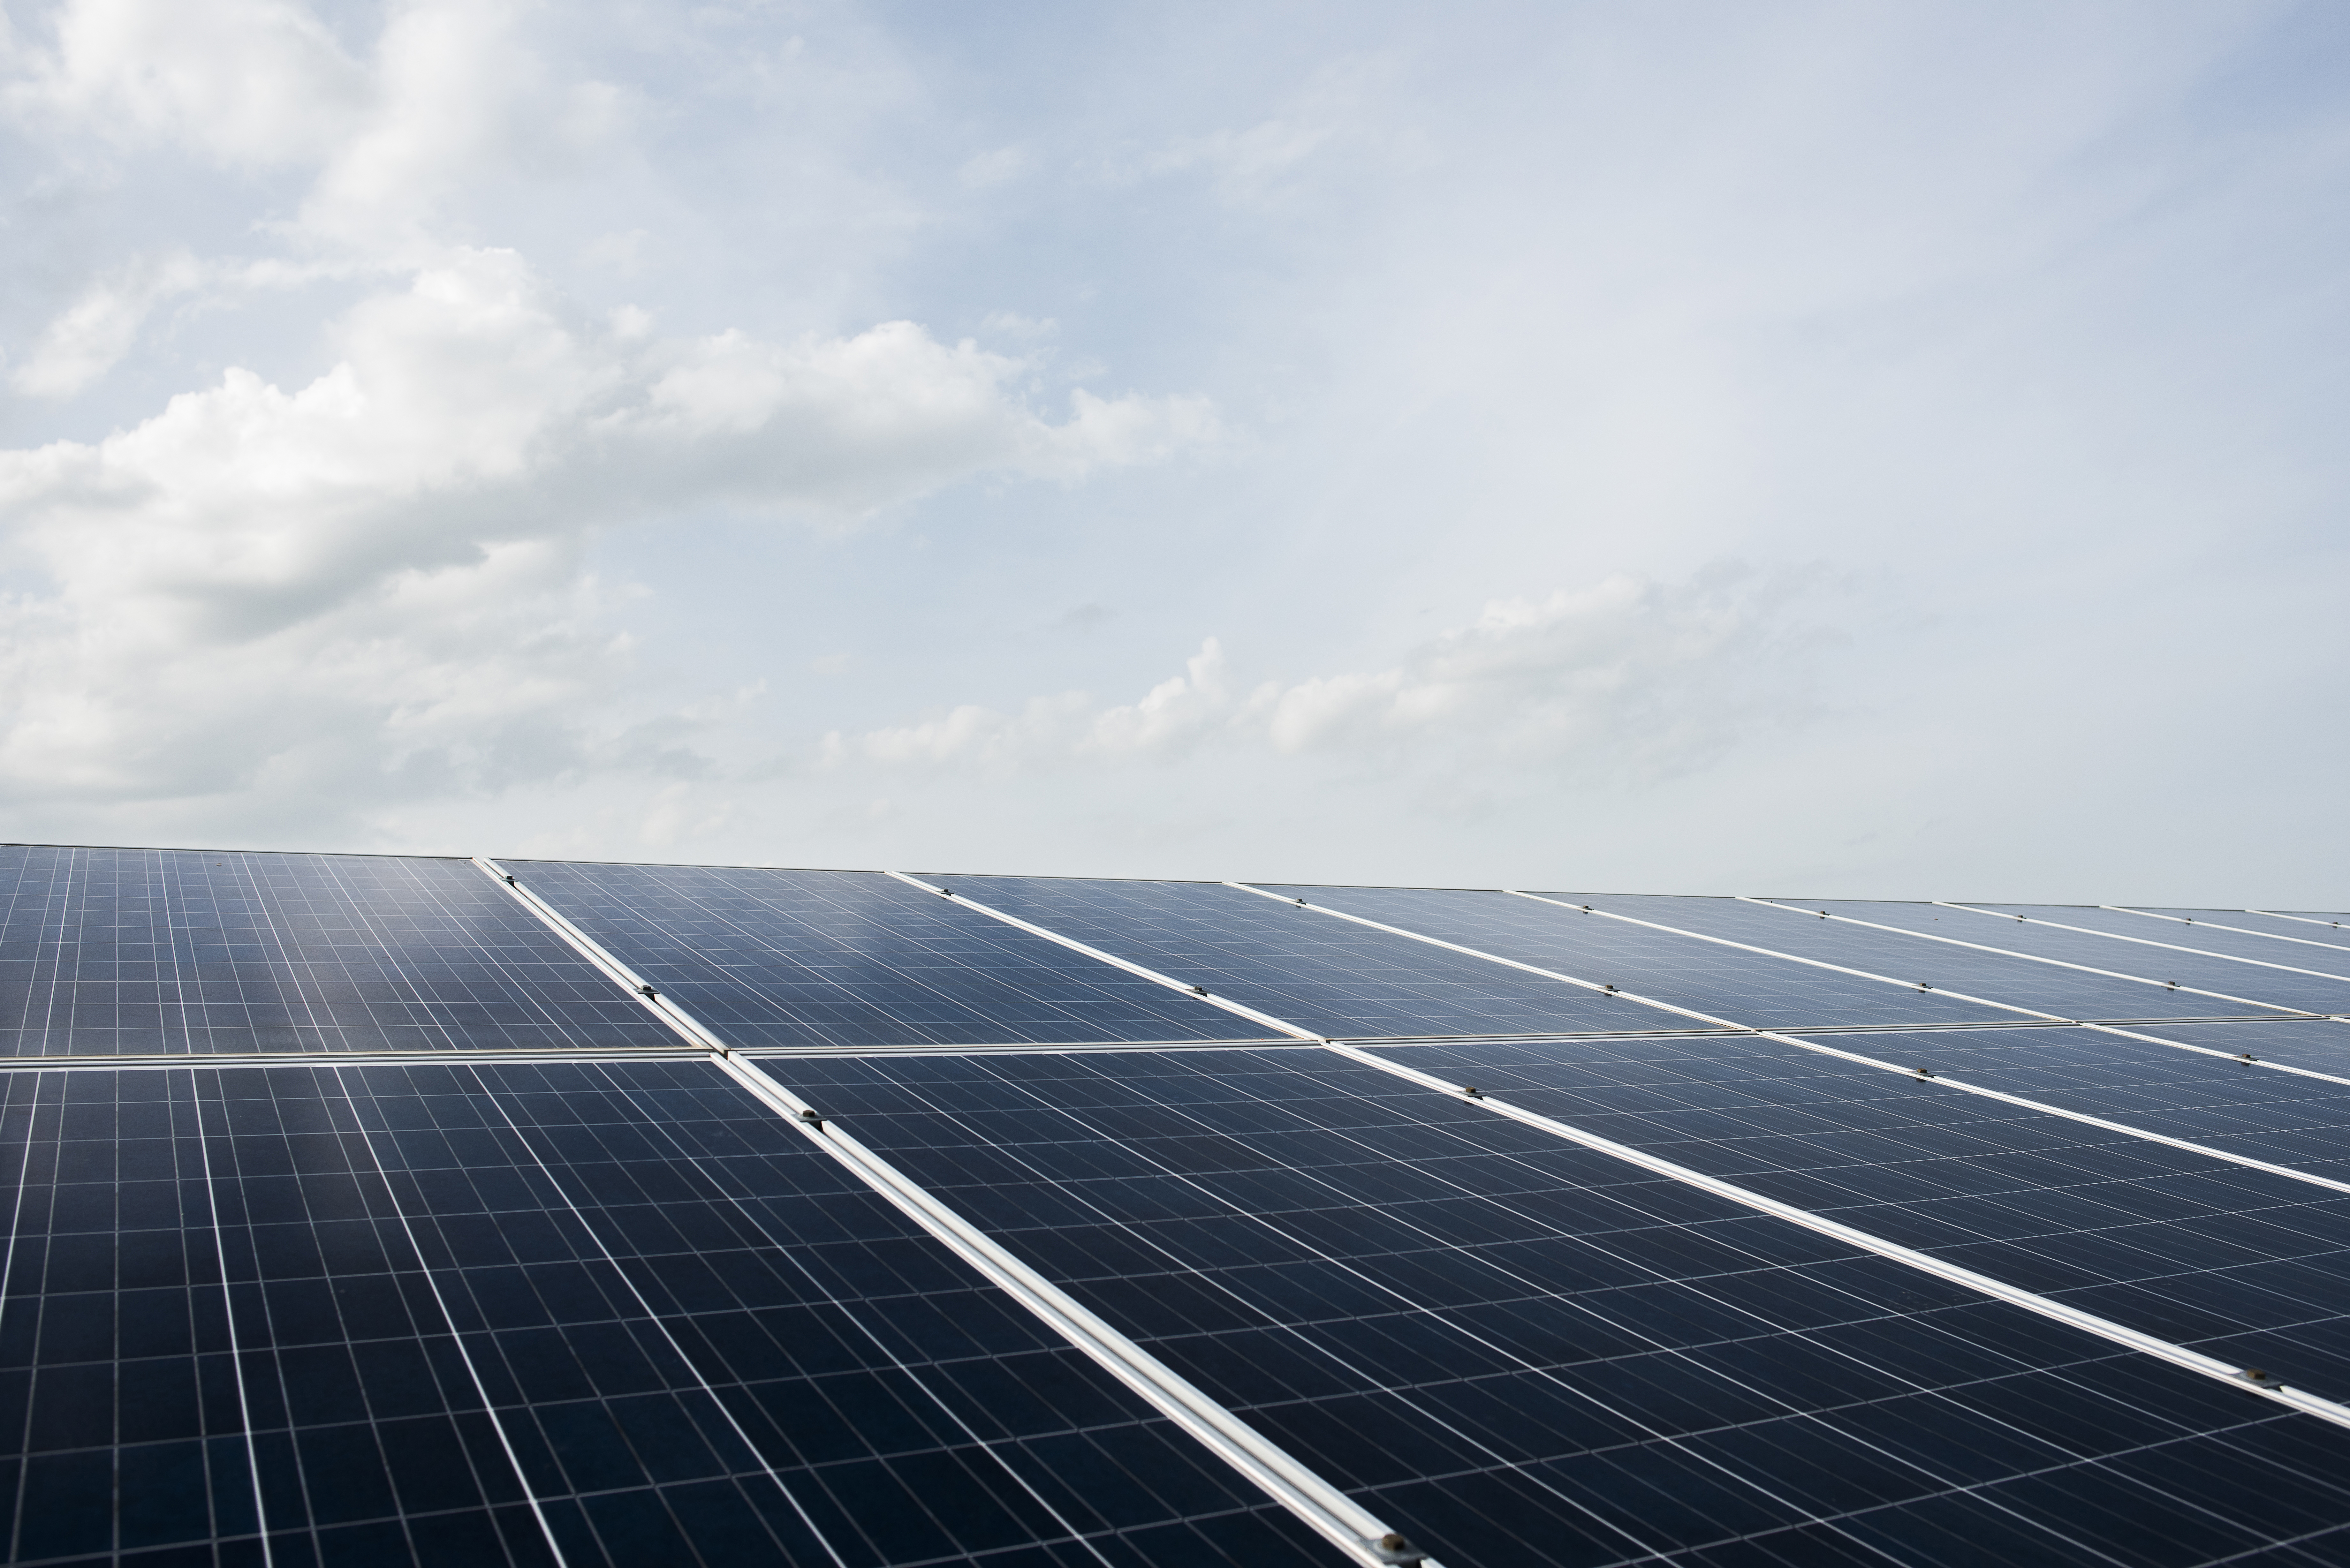 El futur de l’energia solar: innovació i evolució constant en tecnologia i sostenibilitat